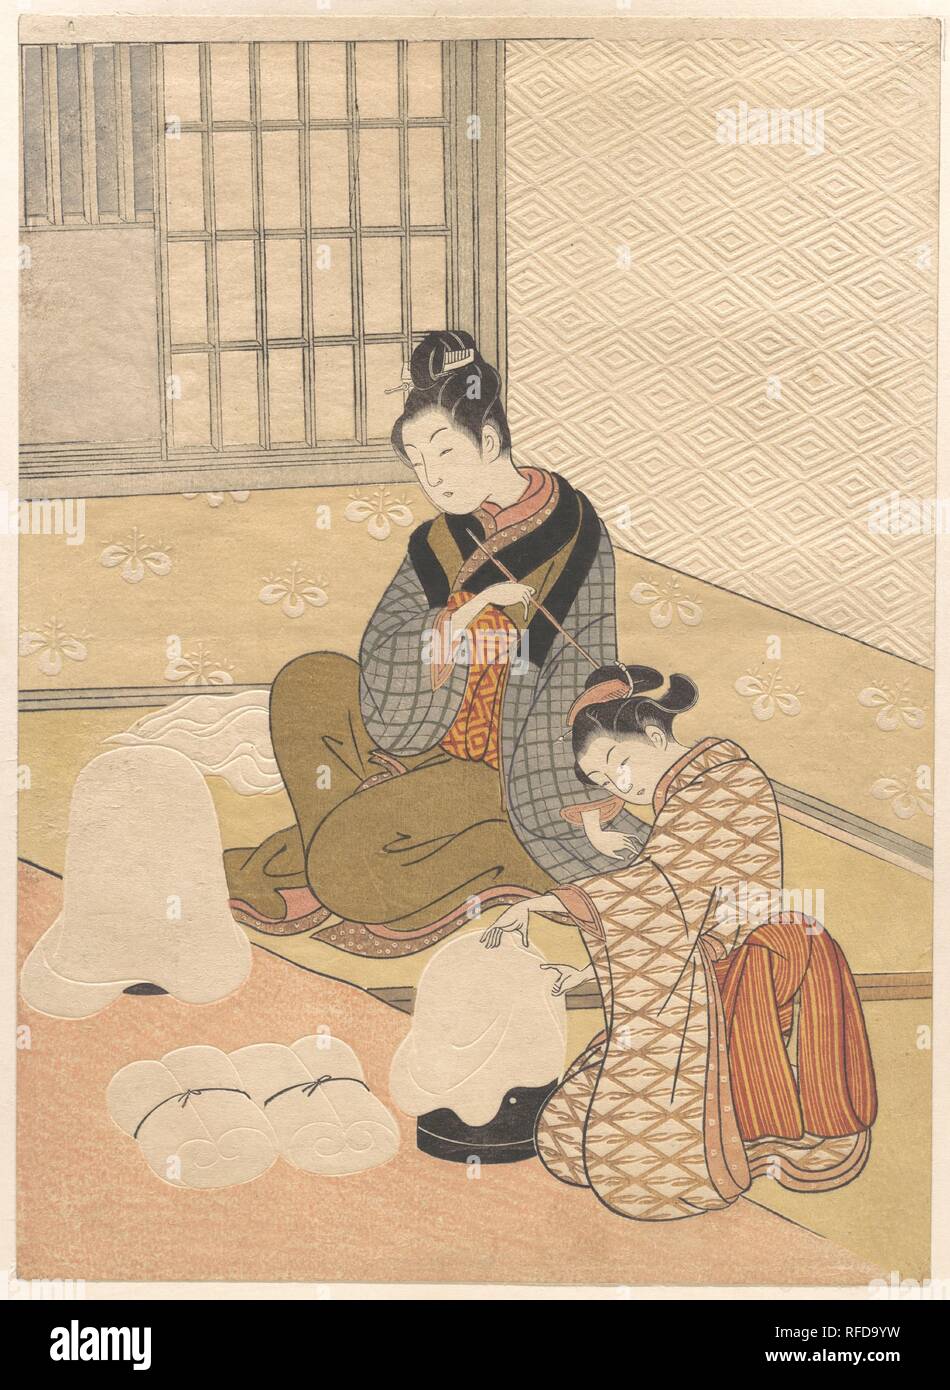 Soir de neige sur l'appareil de chauffage. Artiste : Suzuki Harunobu (japonais, 1725-1770). Culture : le Japon. Dimensions : 11 1/8 x 8 1/8 in. (28,3 x 20,6 cm) impression de taille moyenne (chu-ban). Date : fin du 18e siècle. La scène de l'intérieur de cette impression est renforcée par des doubles fenêtres, à la fois une série de barres et panneaux coulissants shoji. Les fenêtres, cependant, sont ouverts. Une femme, assise et tenant une pipe, semble s'attendre à ce qu'elle sera vue par un homme à travers les lacunes et sera en mesure d'organiser une cession. L'autre femme fait des ouates en étirant feuilles de soie Soie dentaire au cours de la chauffe en forme de dôme laqué connu Banque D'Images